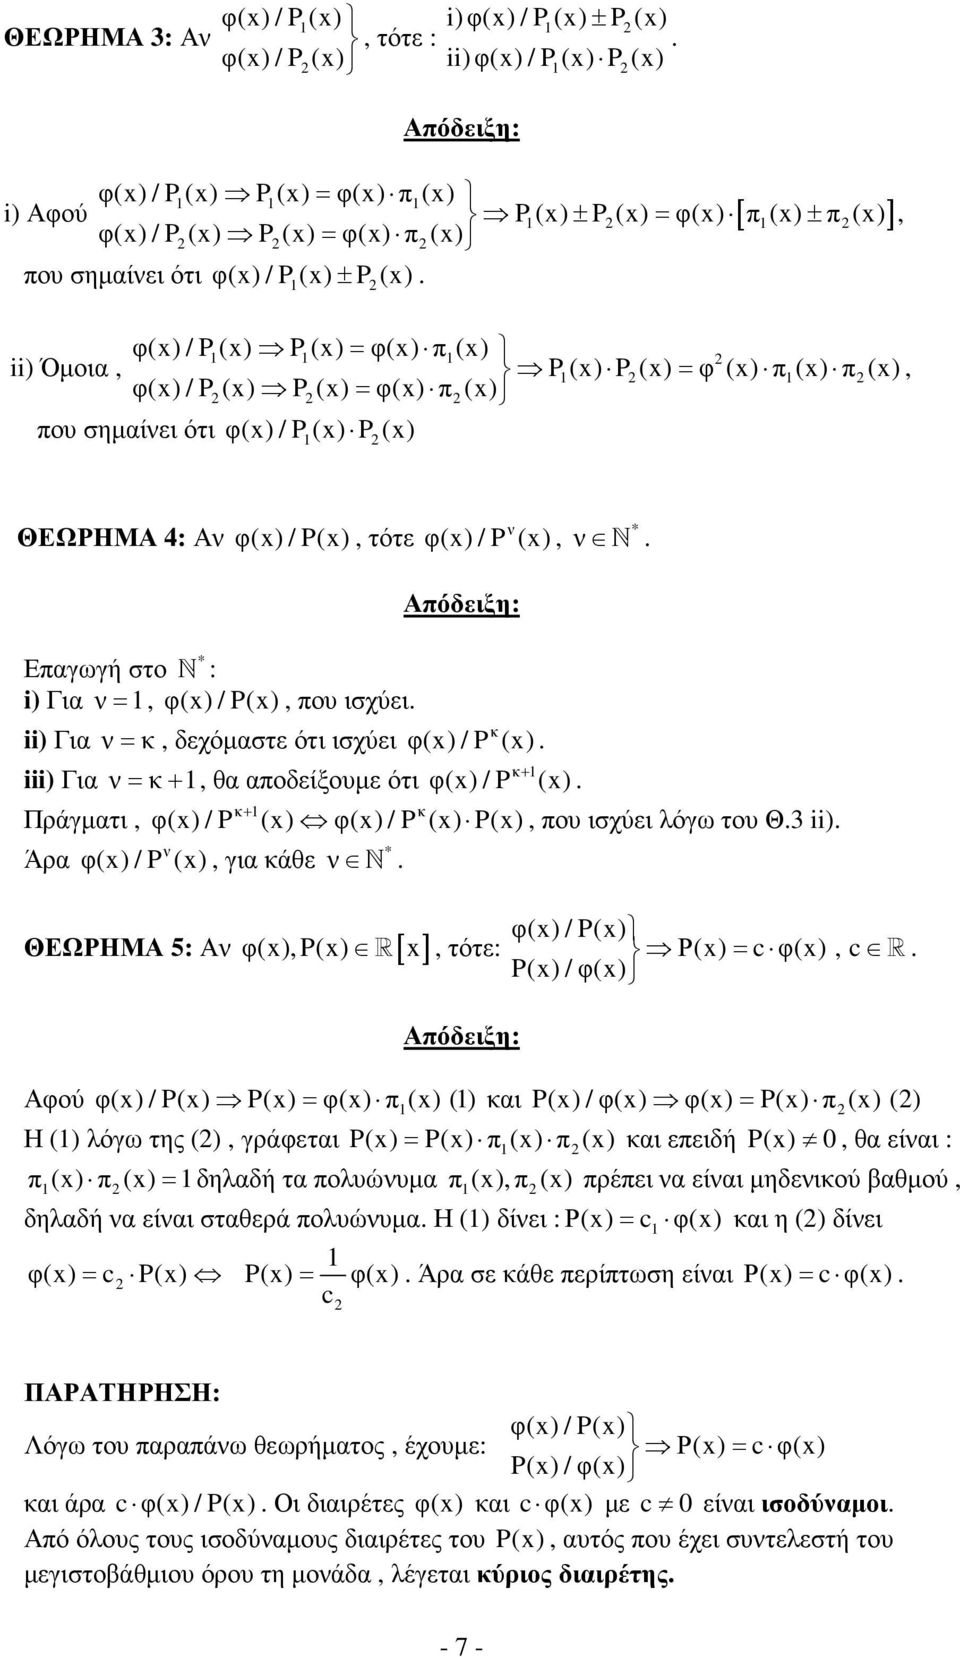 φ(x) / P 1(x) P (x), ΘΕΩΡΗΜΑ 4: Αν φ(x) / P(x), τότε * Επαγωγή στο N : i) Για ν = 1, φ(x) / P(x), που ισχύει ii) Για ν = κ, δεχόµαστε ότι ισχύει iii) Για ν = κ + 1, θα αποδείξουµε ότι Πράγµατι, Άρα ν